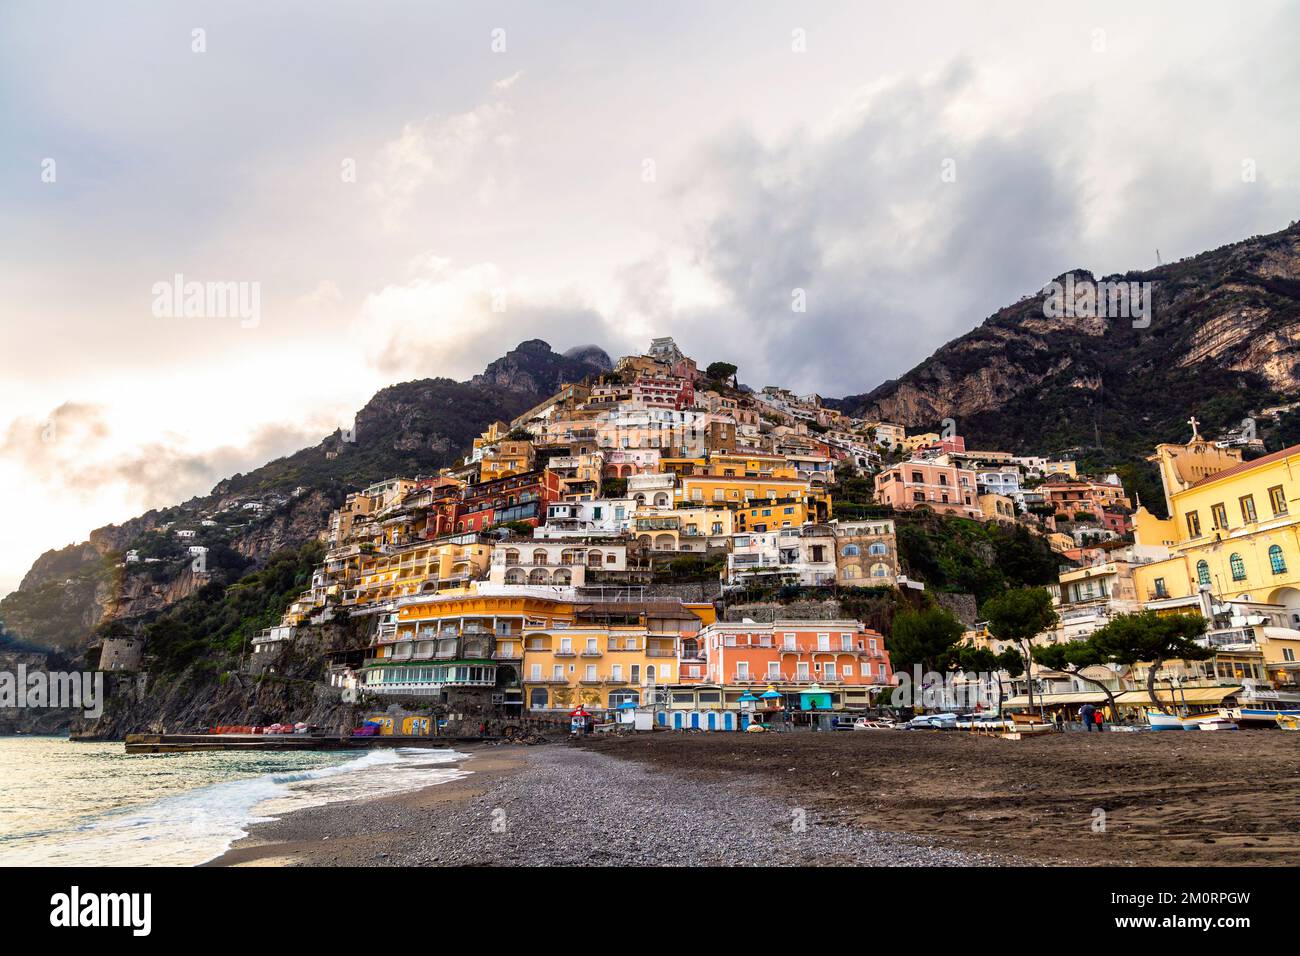 Vista panorámica de casas de colores en la ladera de la ciudad de Positano al atardecer, Positano, Campania, Italia Foto de stock